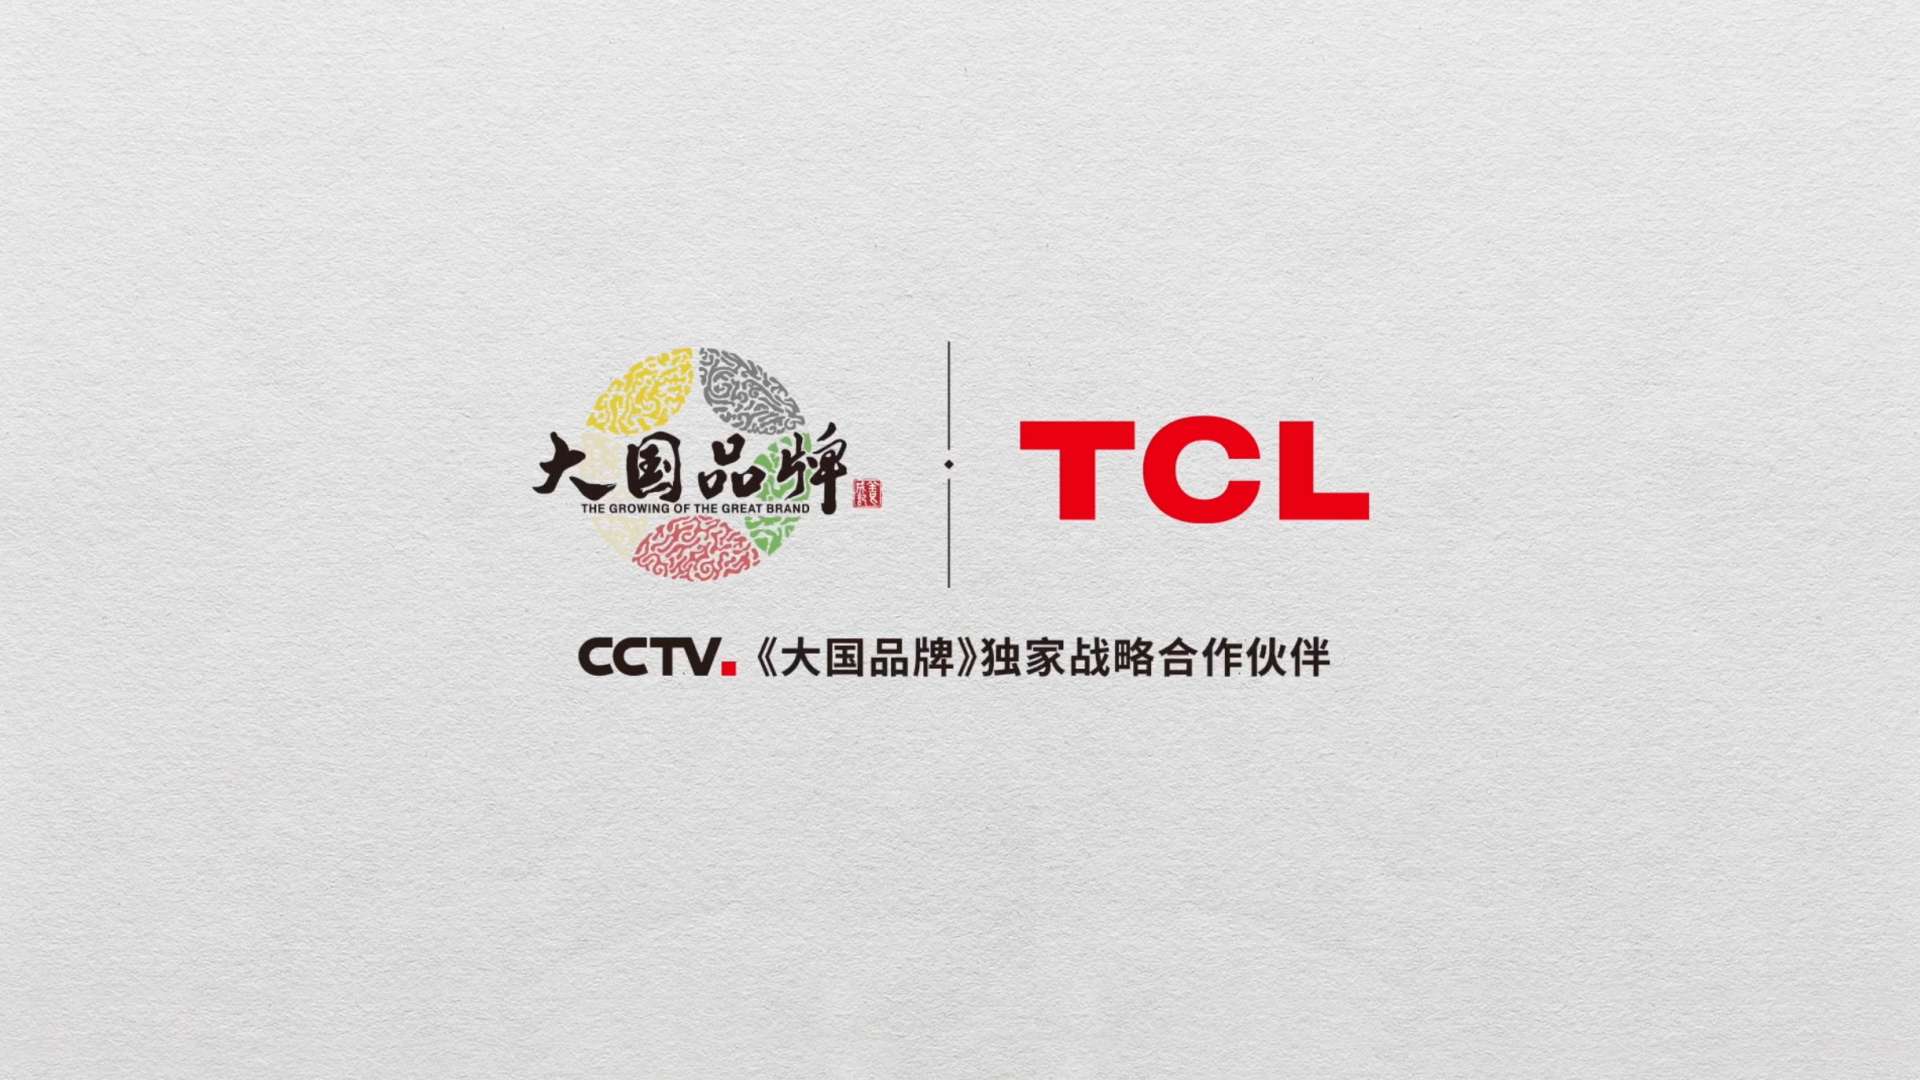 #TCL华星光电#《视界》 登陆#央视一套#《大国品牌》